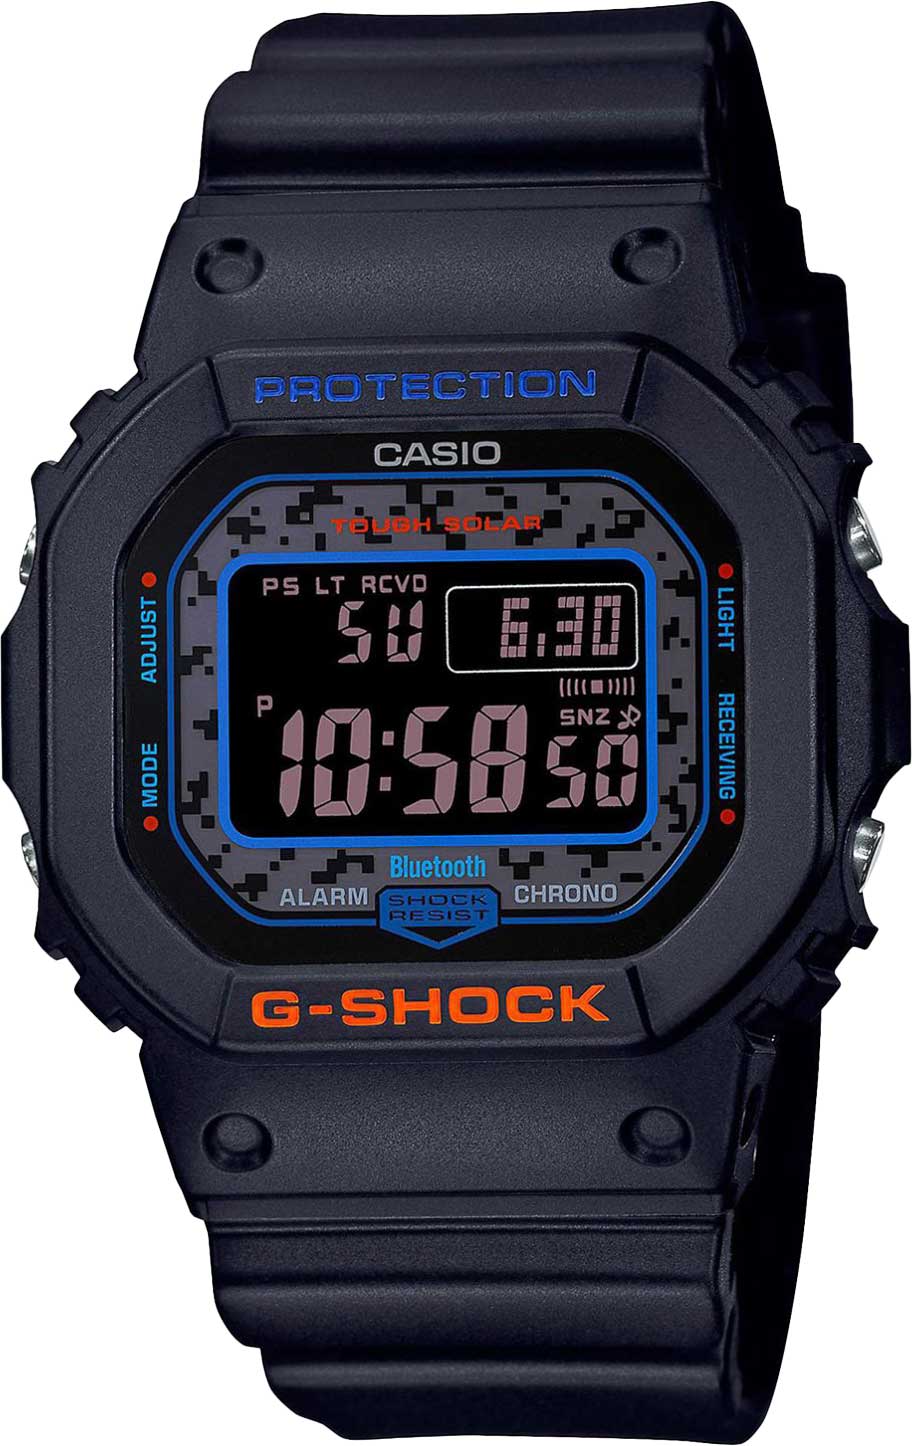    Casio G-SHOCK GW-B5600CT-1ER  